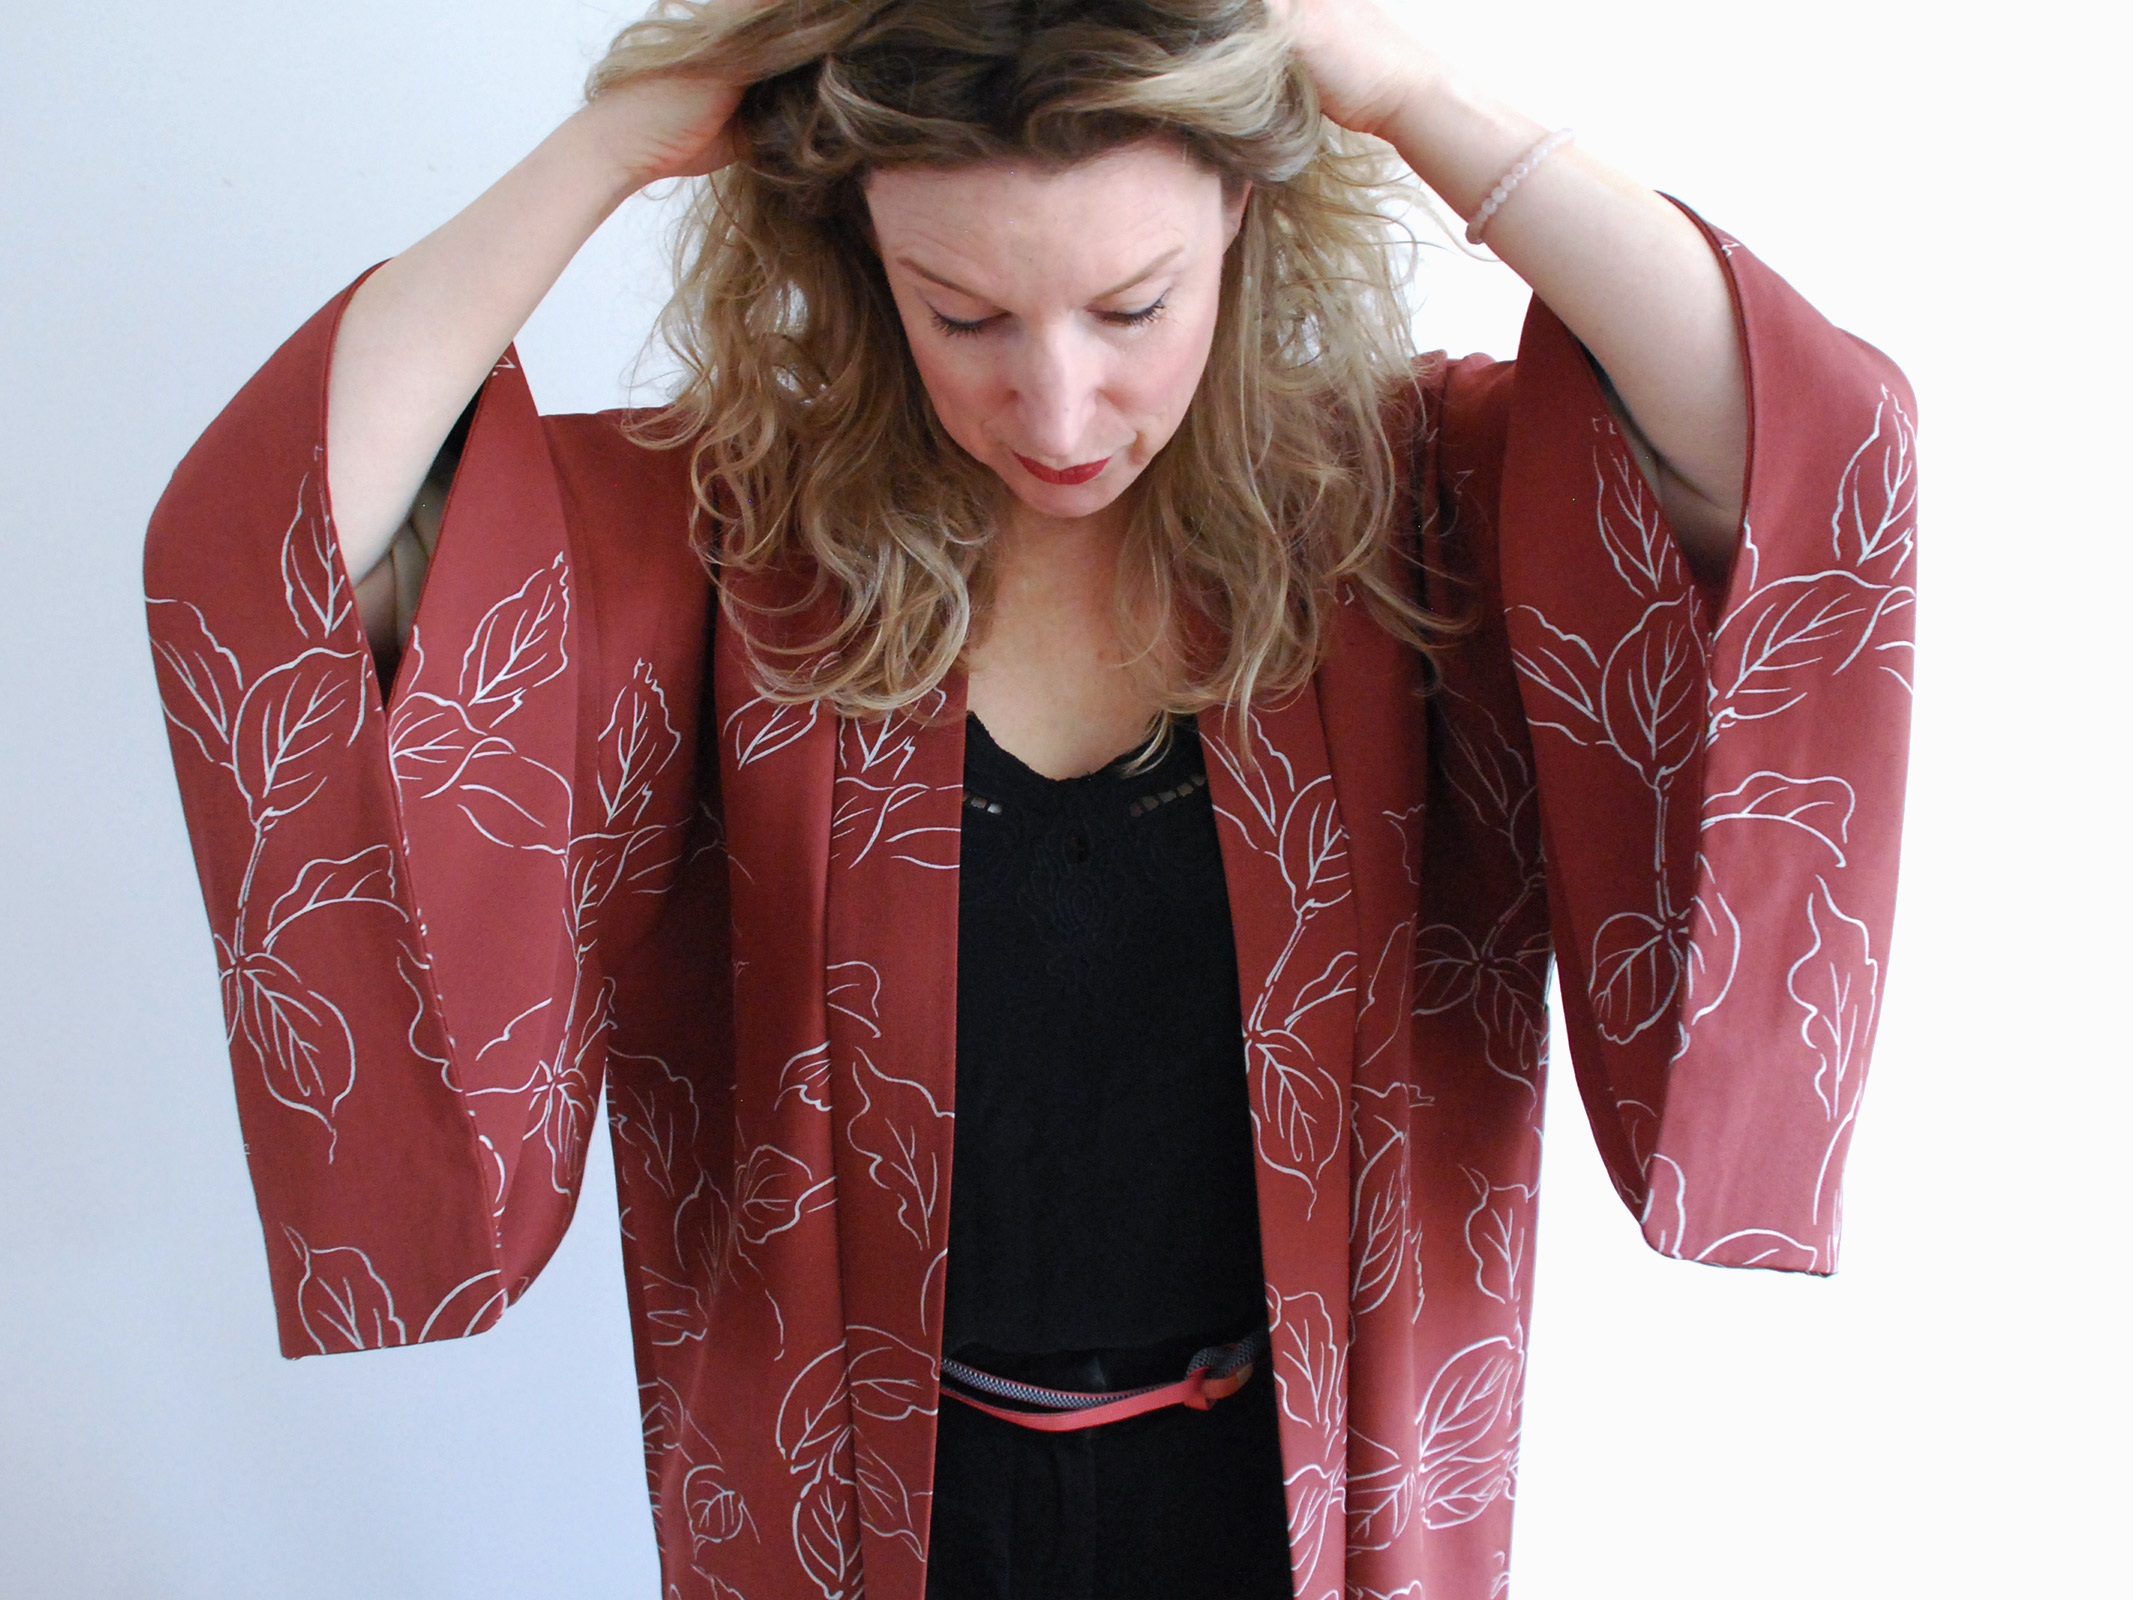 Aki – gorgeous Kimono Jacket in Japanese carmine color